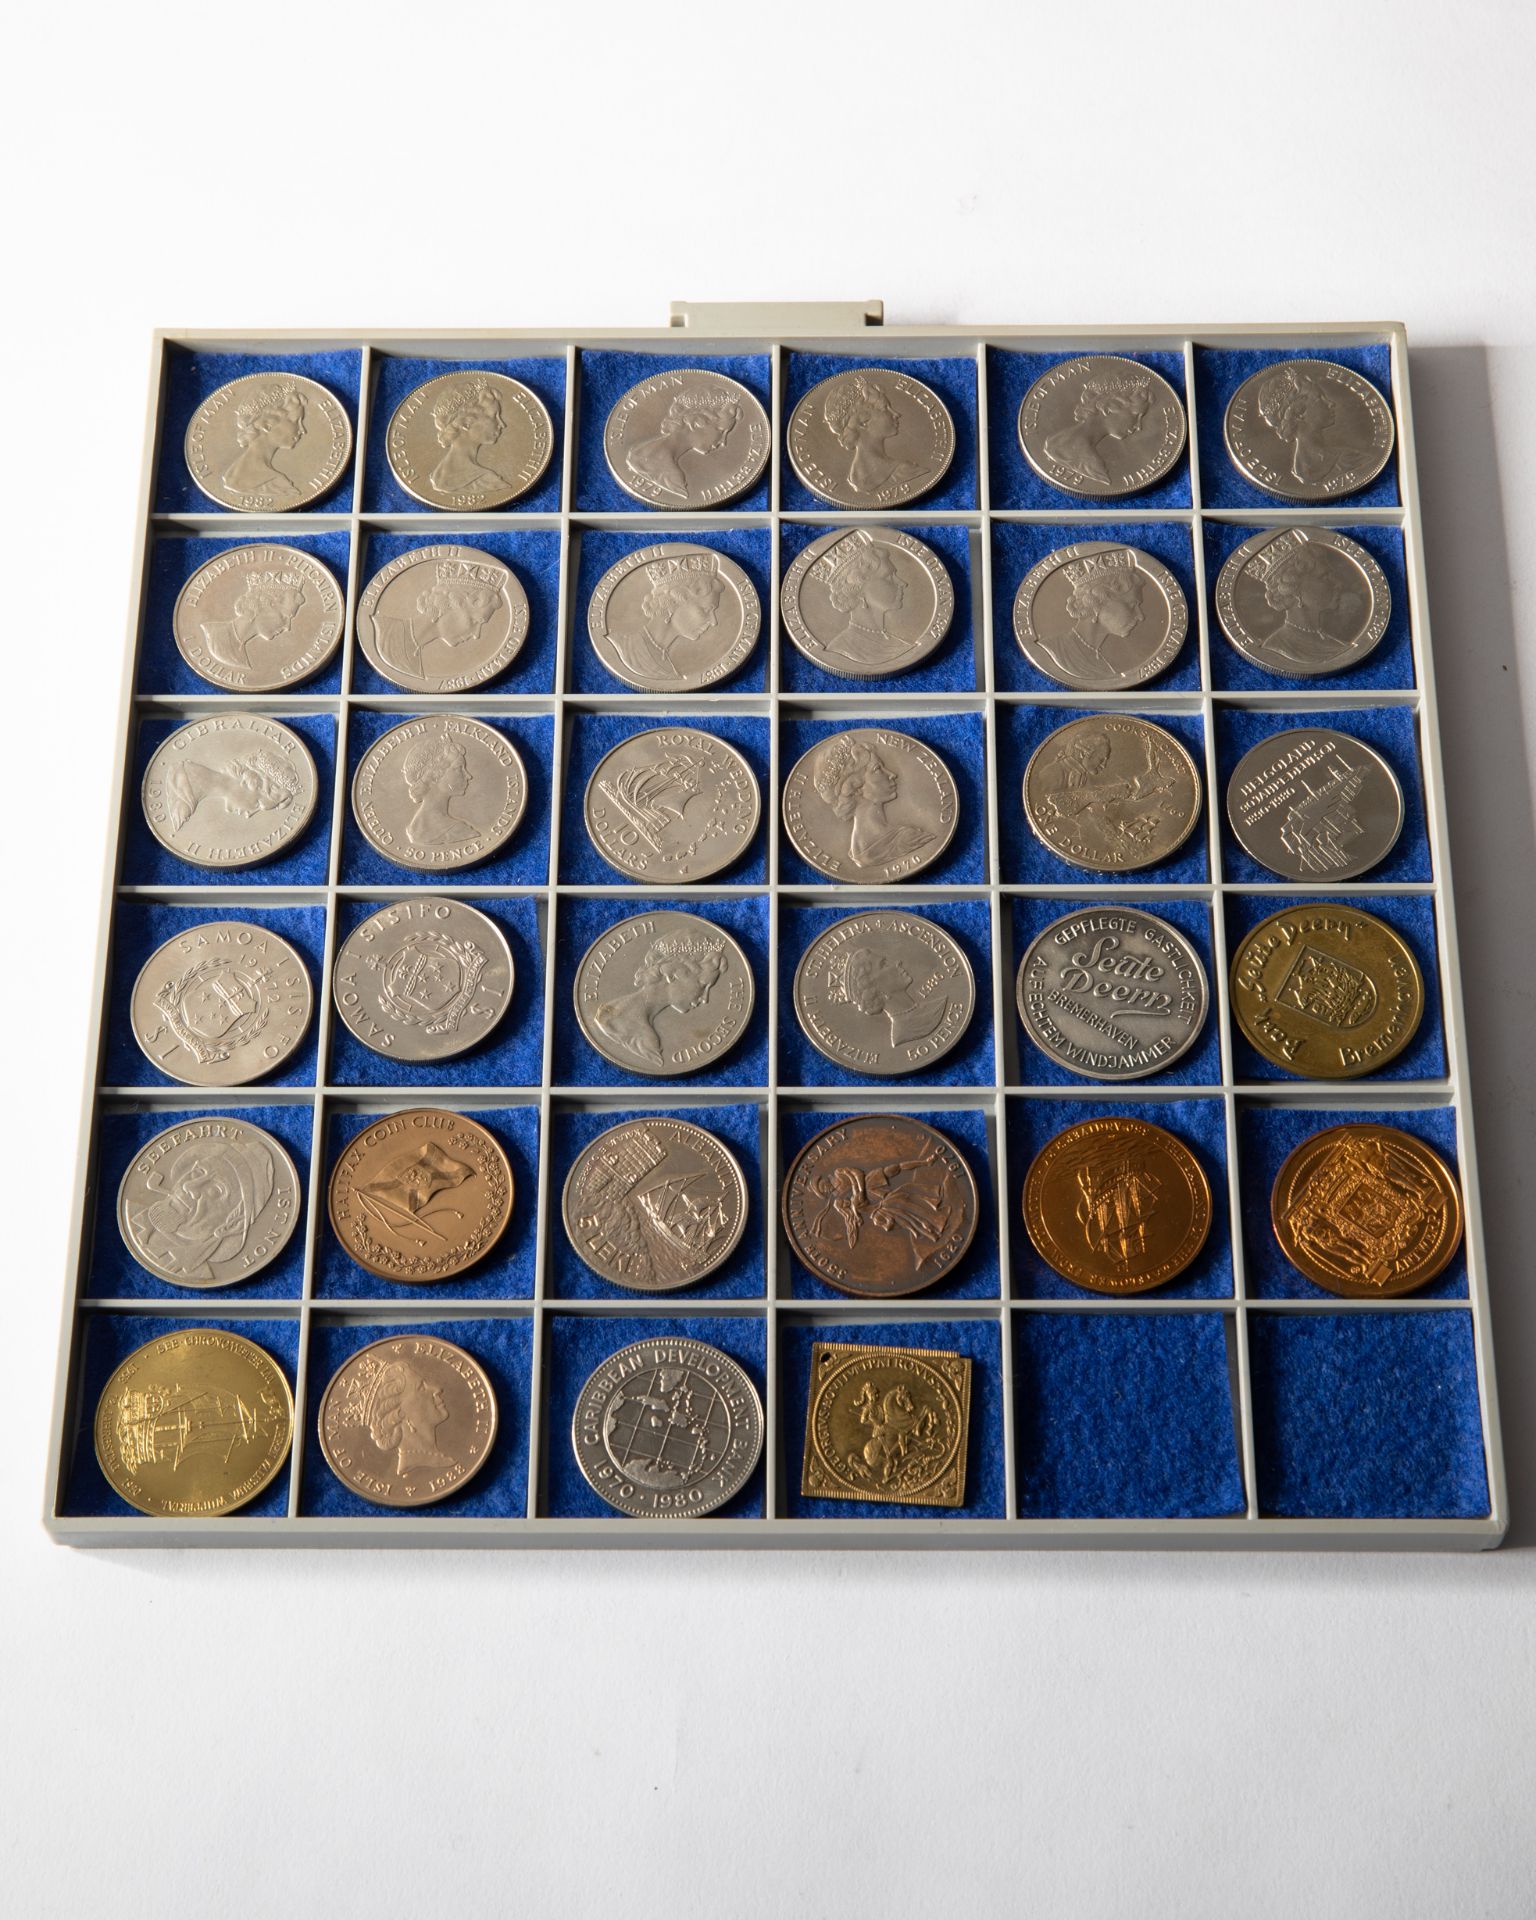 26 silver coins & 8 medals, ships 1969-1988 worldwide - Bild 8 aus 13